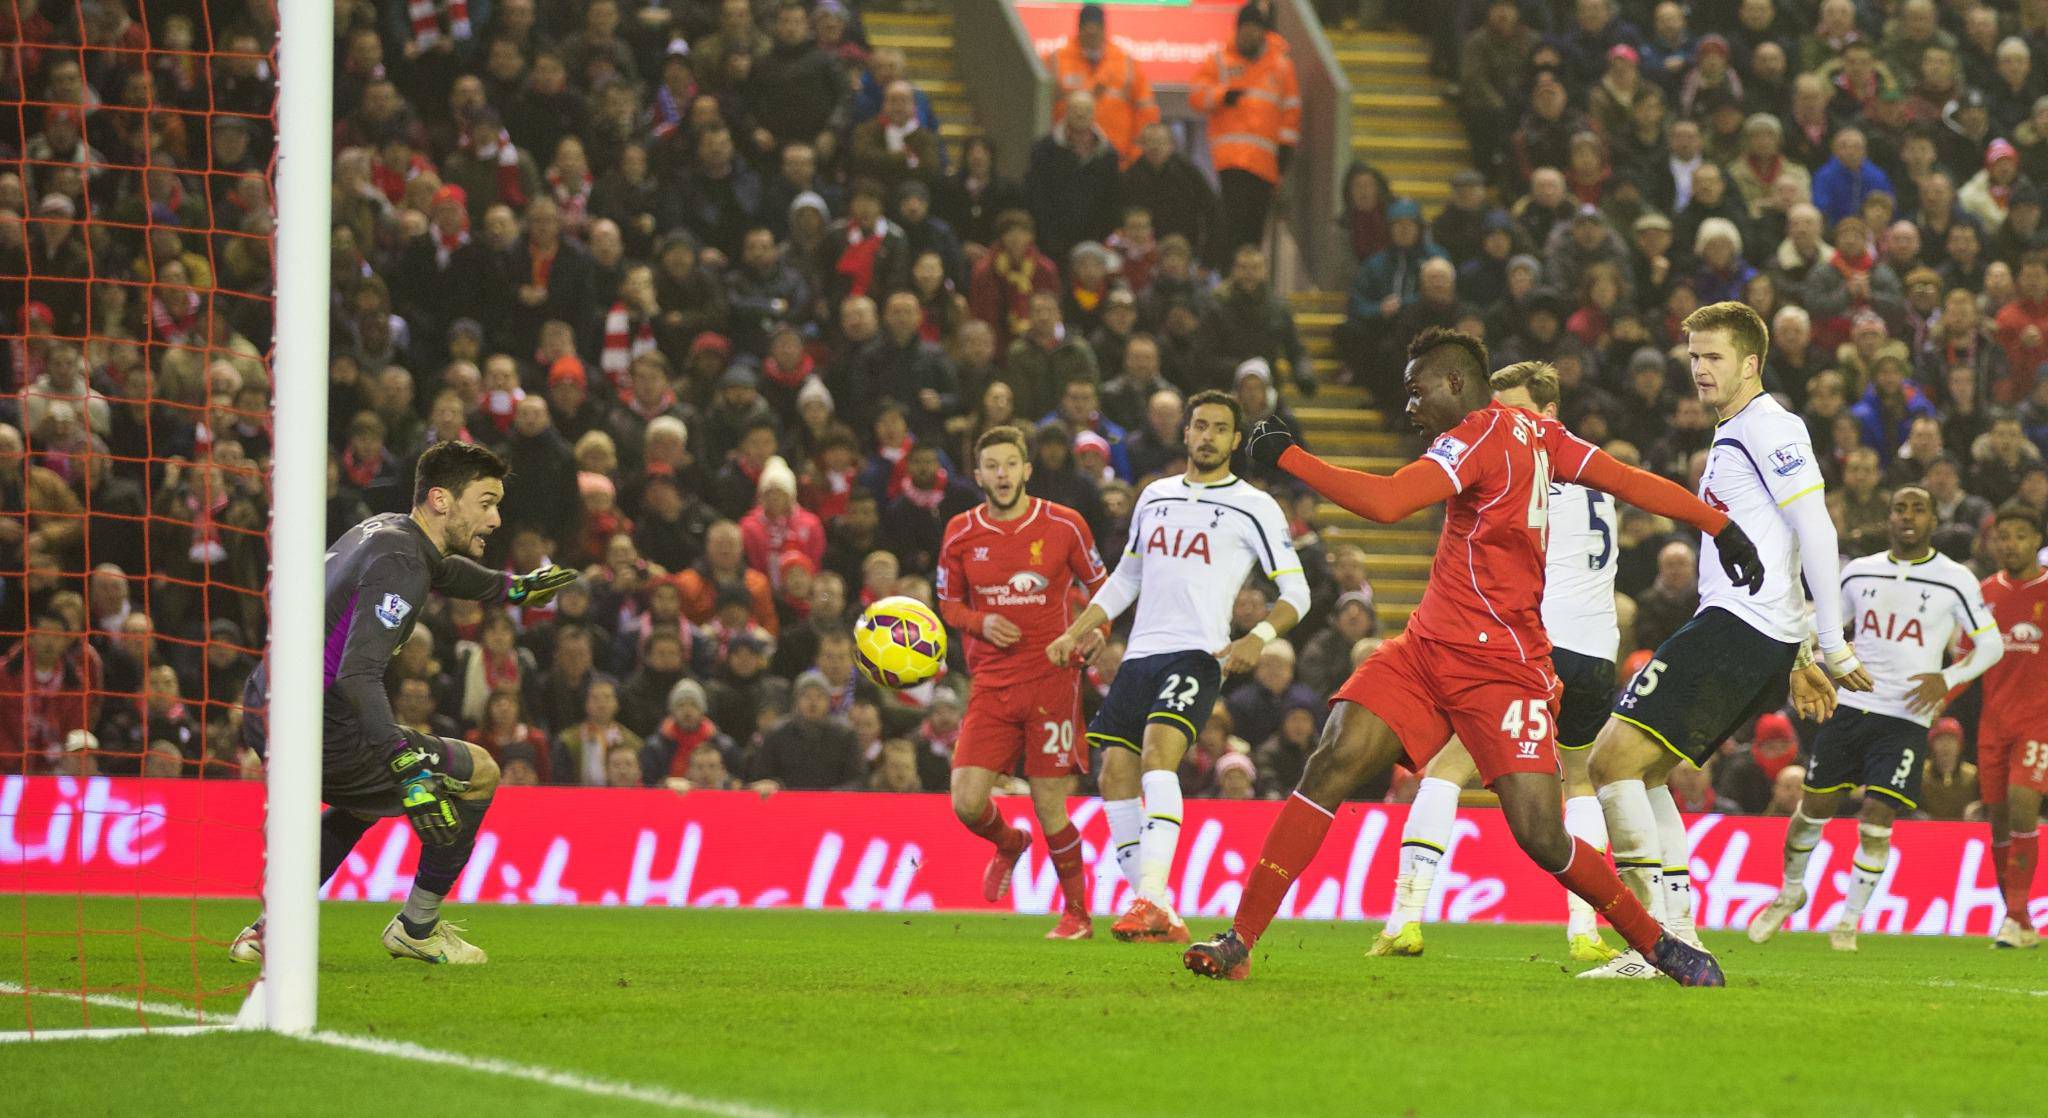 Đụng độ Liverpool - Tottenham ngập tràn "mưa" bàn thắng & dấu mốc lịch sử - 5